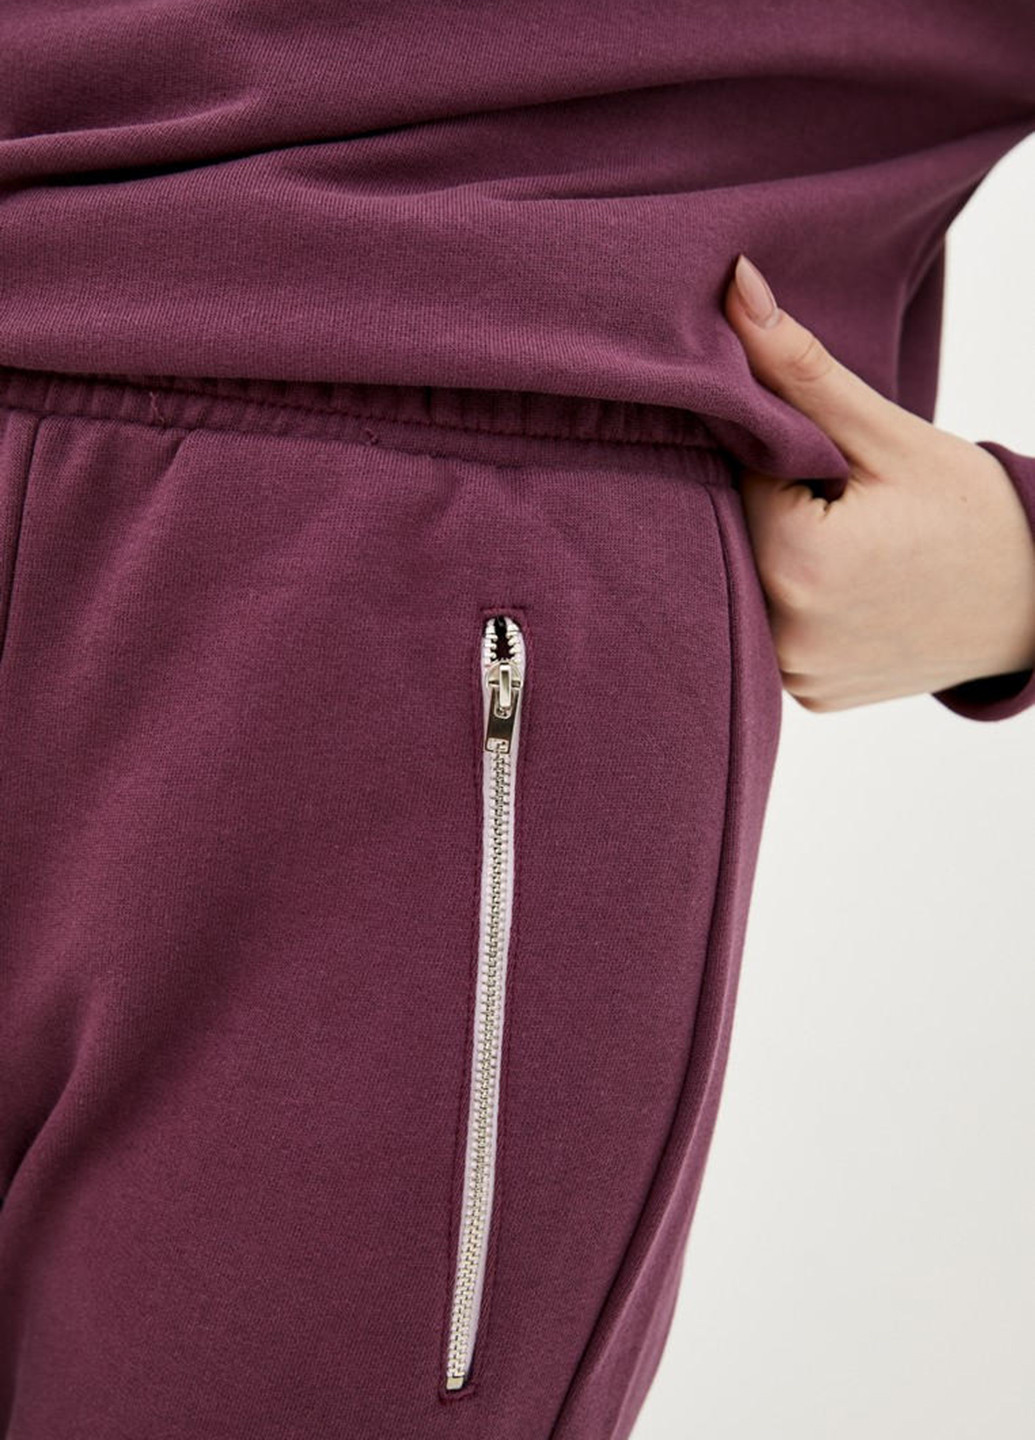 Фиолетовые спортивные демисезонные джоггеры брюки Promin